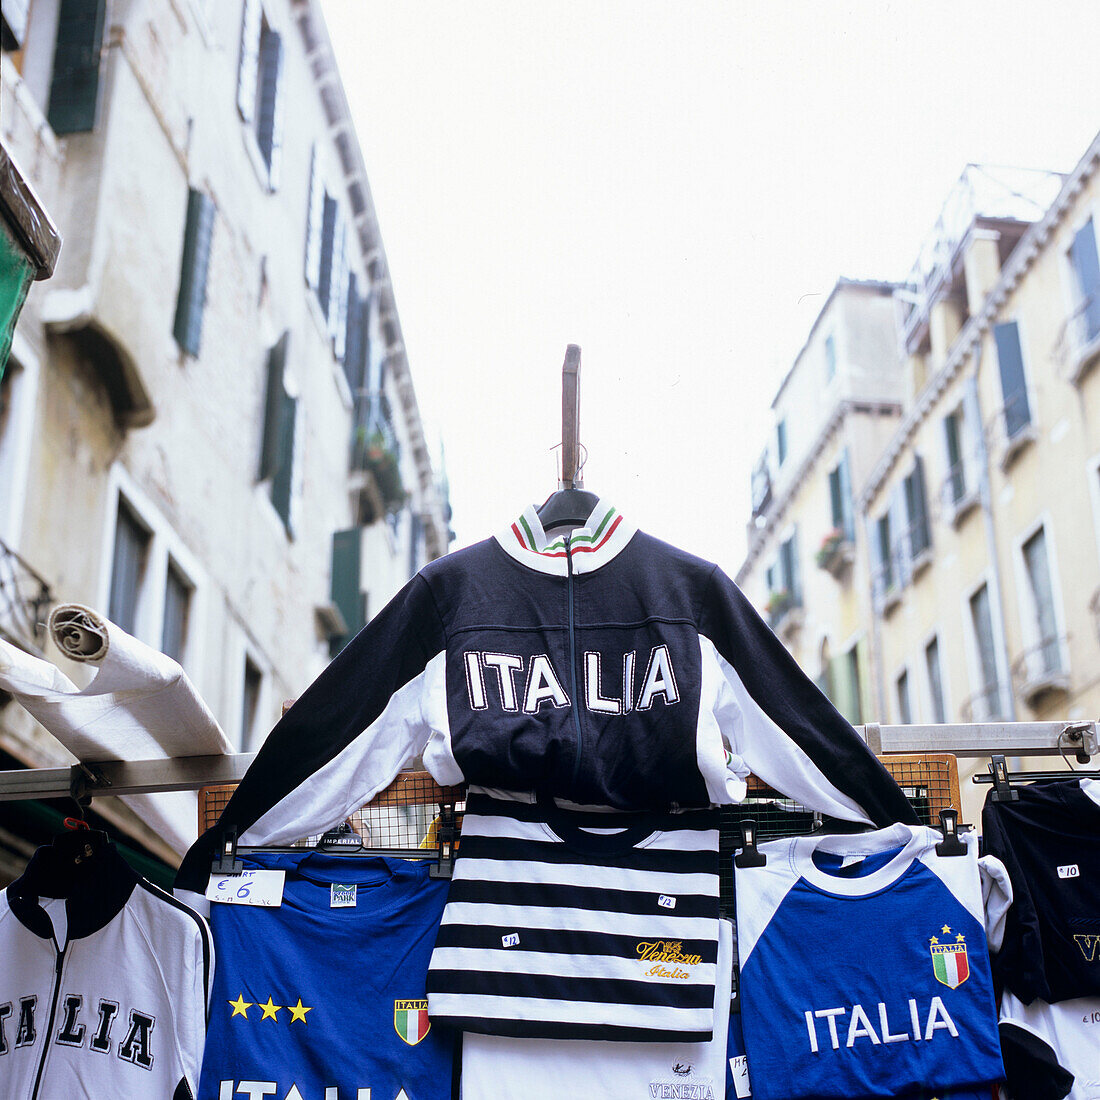 Italienische Trikots an einem Verkaufsstand auf der Strasse, Venedig, Italien